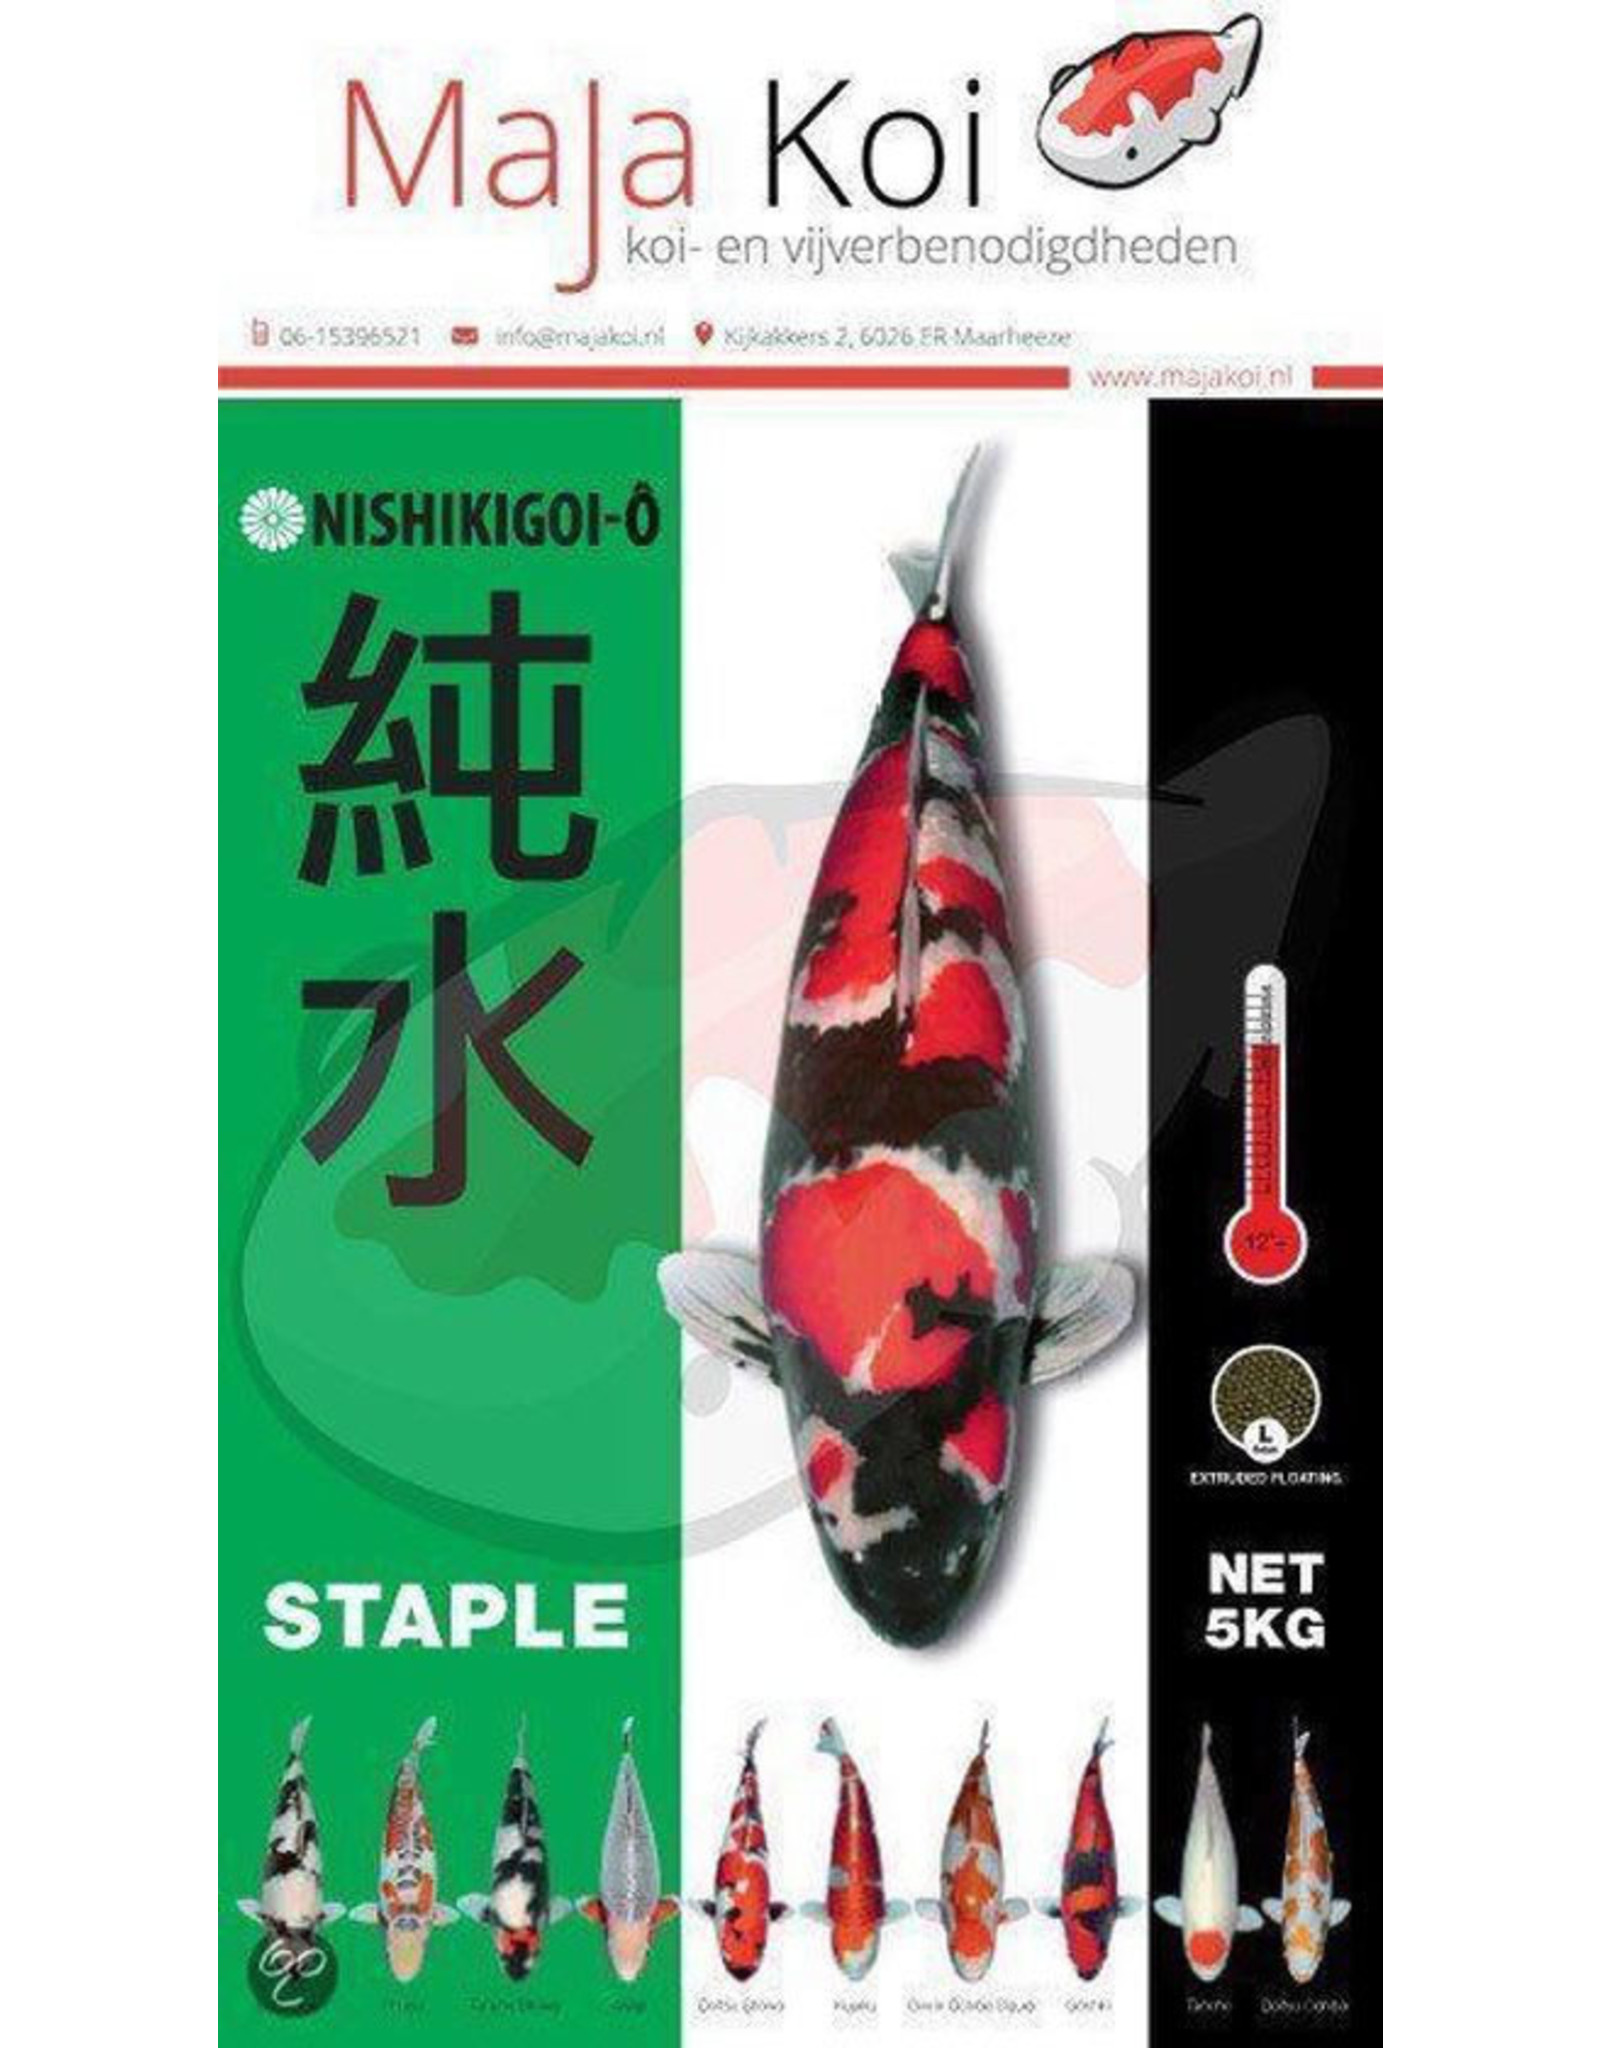 Nishikigoi Nishikigoi-Ô Staple Koi-Grundnahrungsmittel